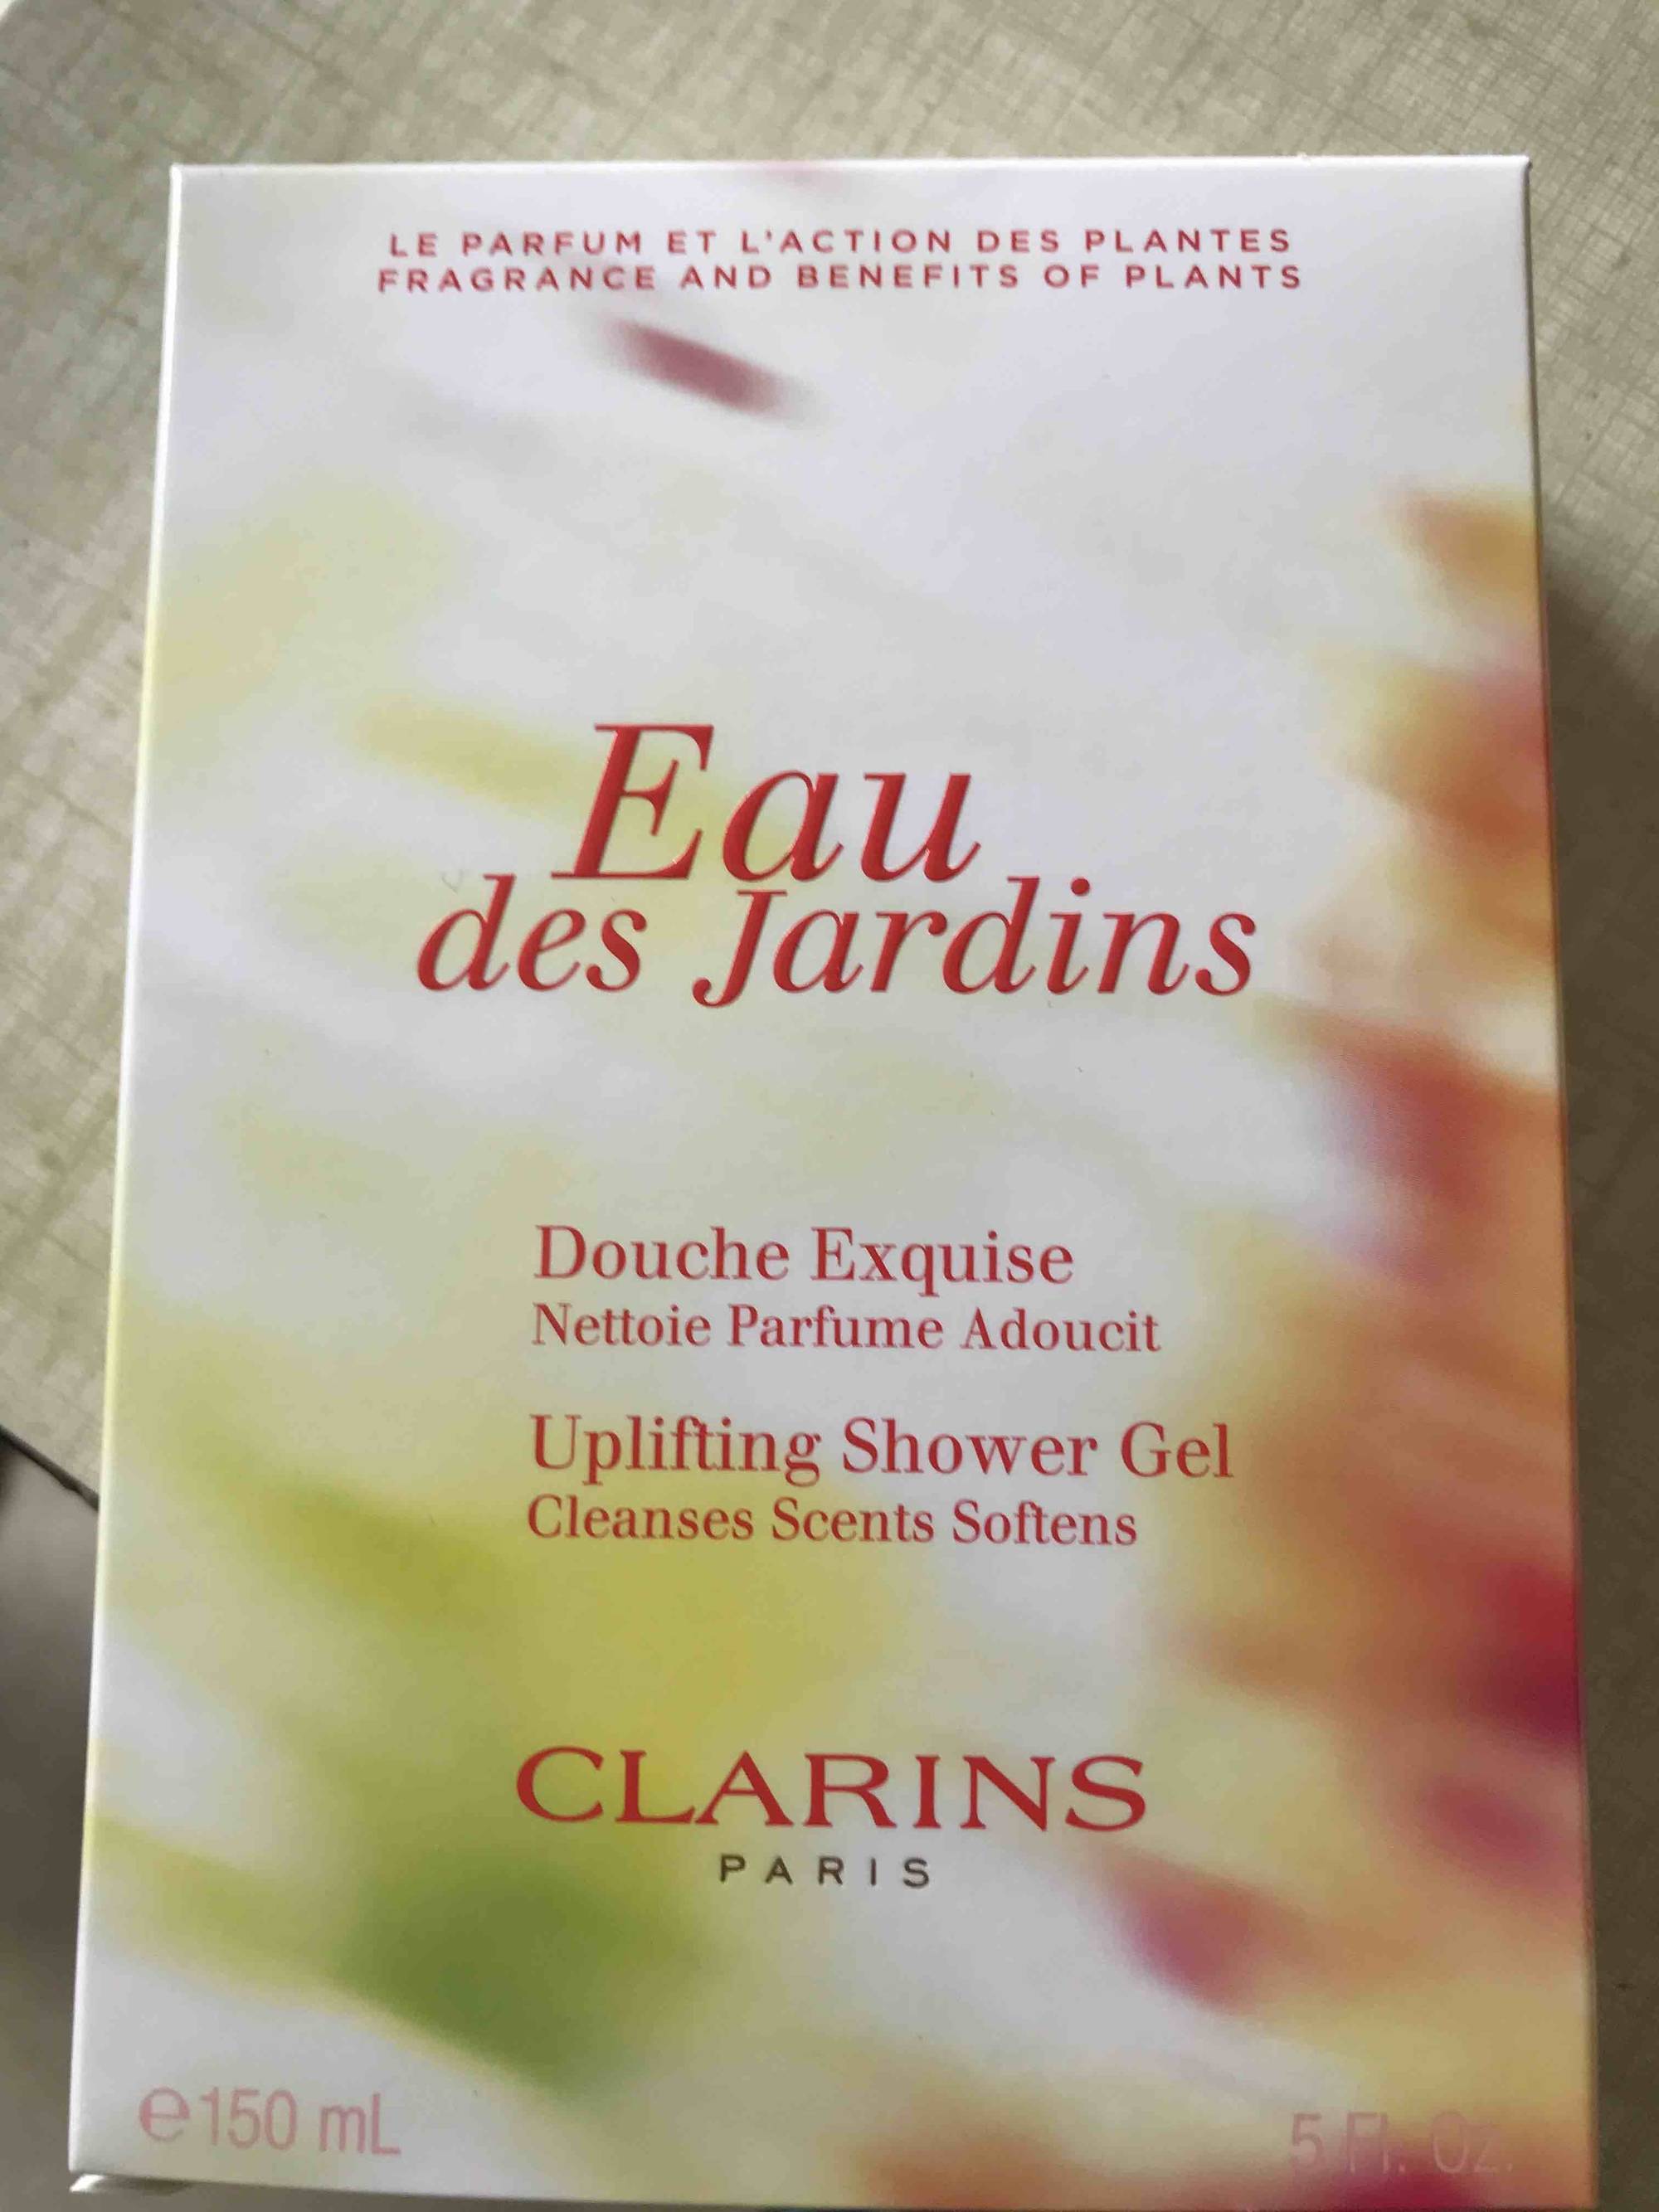 CLARINS - Eau des jardins - Douche exquise